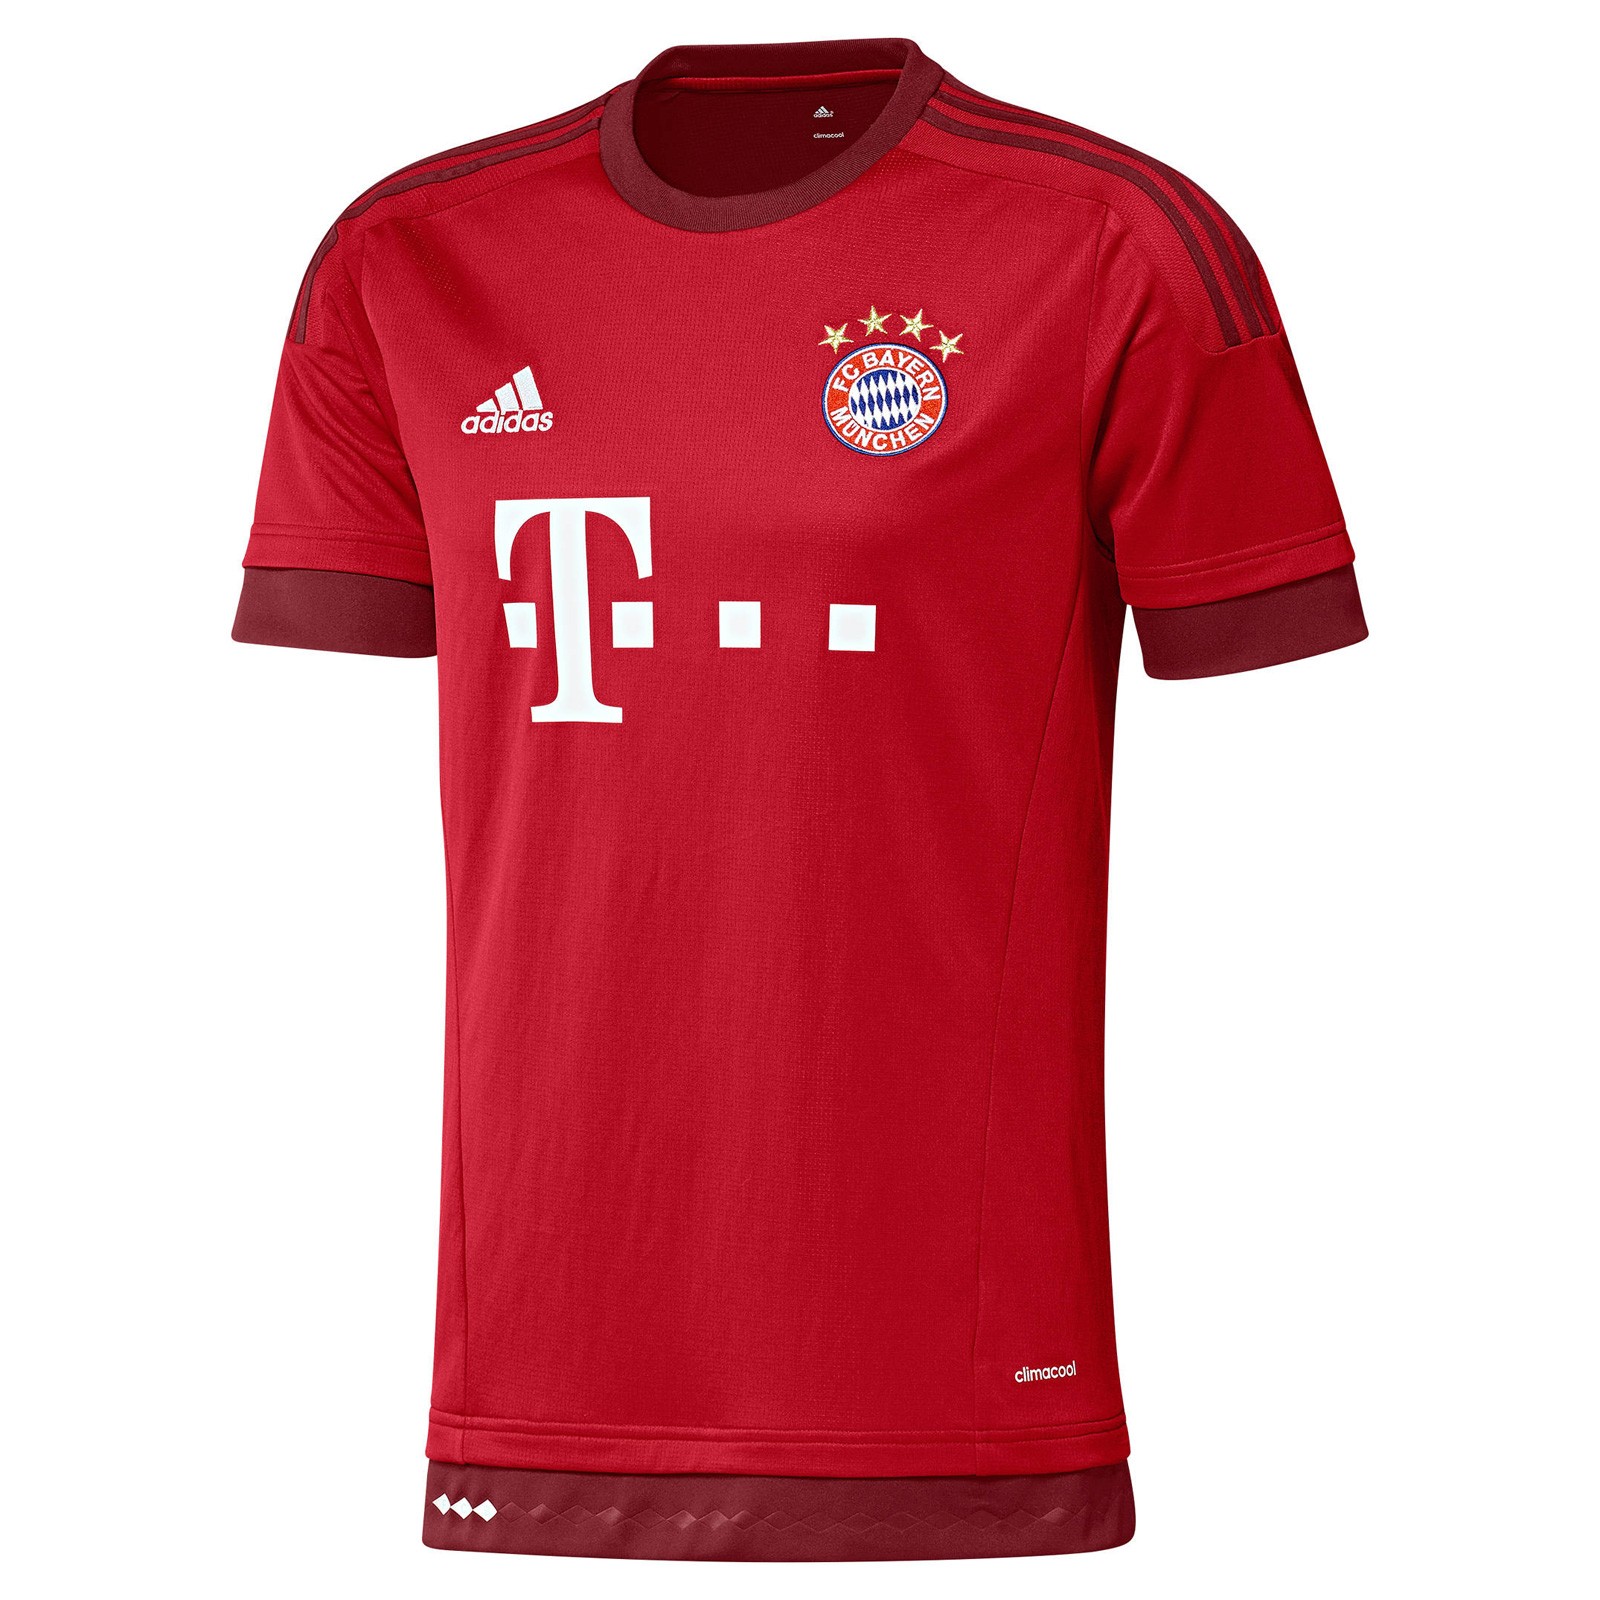 拜仁慕尼黑2015-16赛季球迷版主场球衣